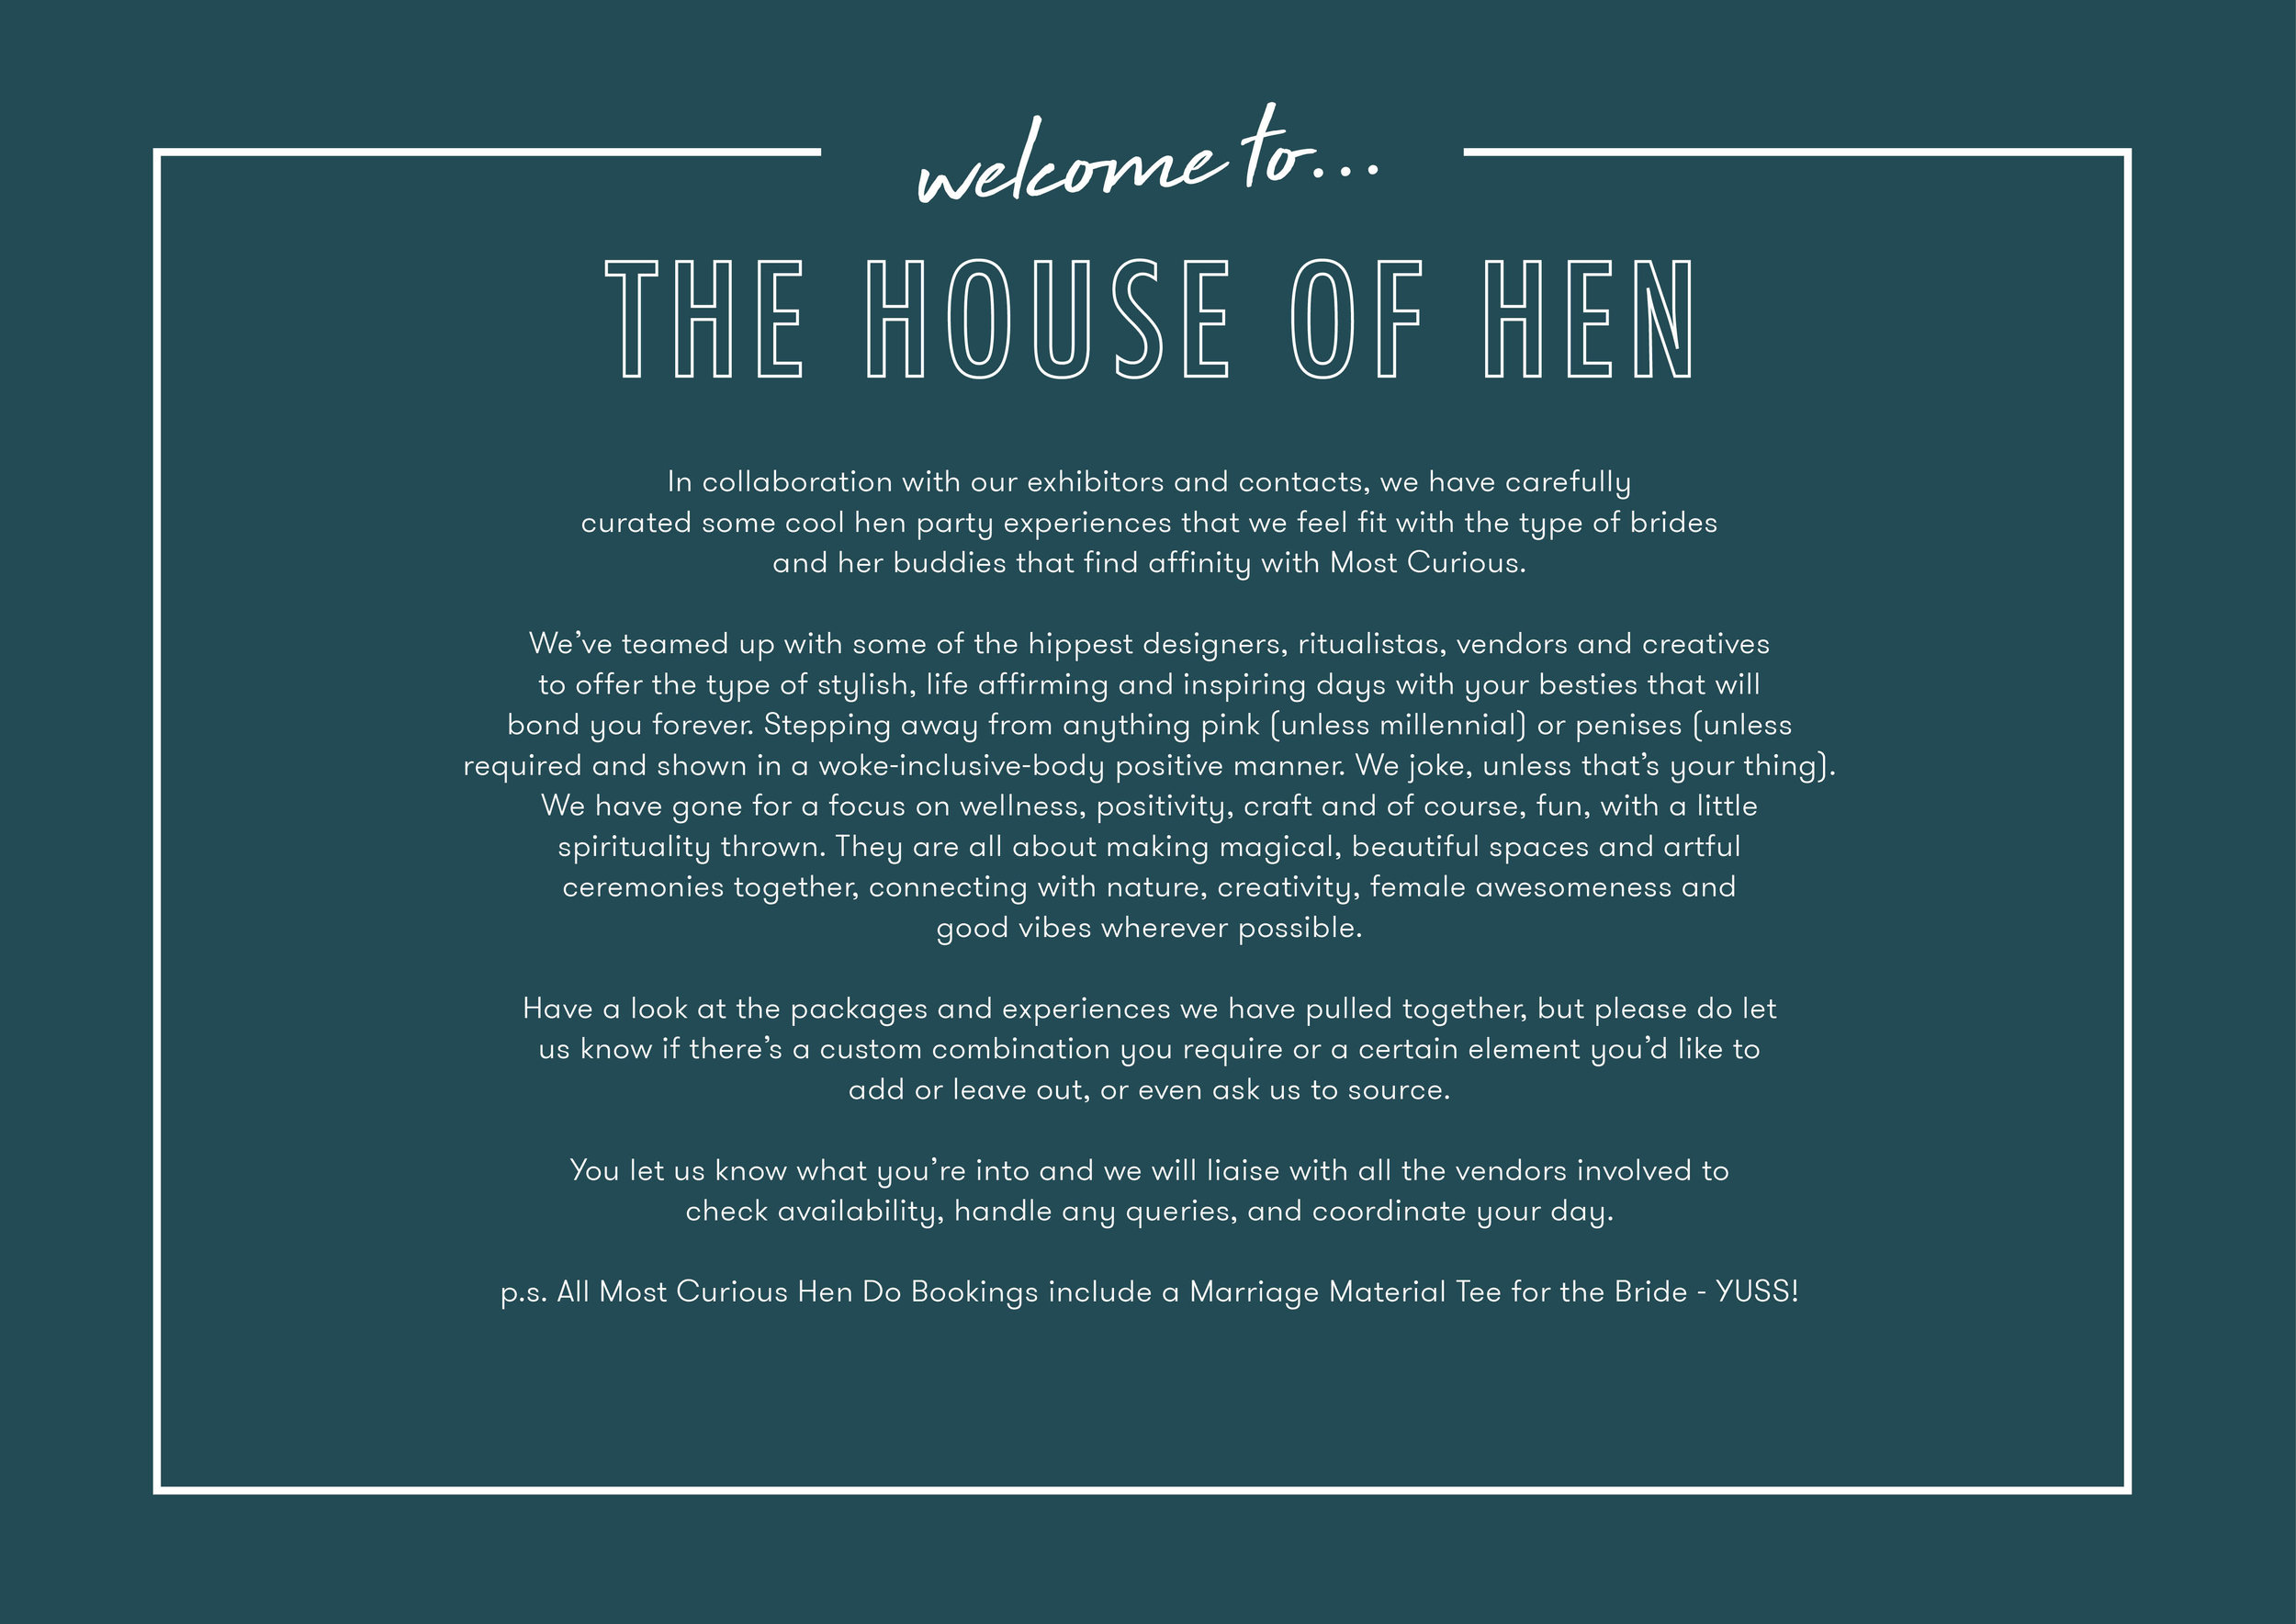 House of Hen_Packages Brochure3.jpg